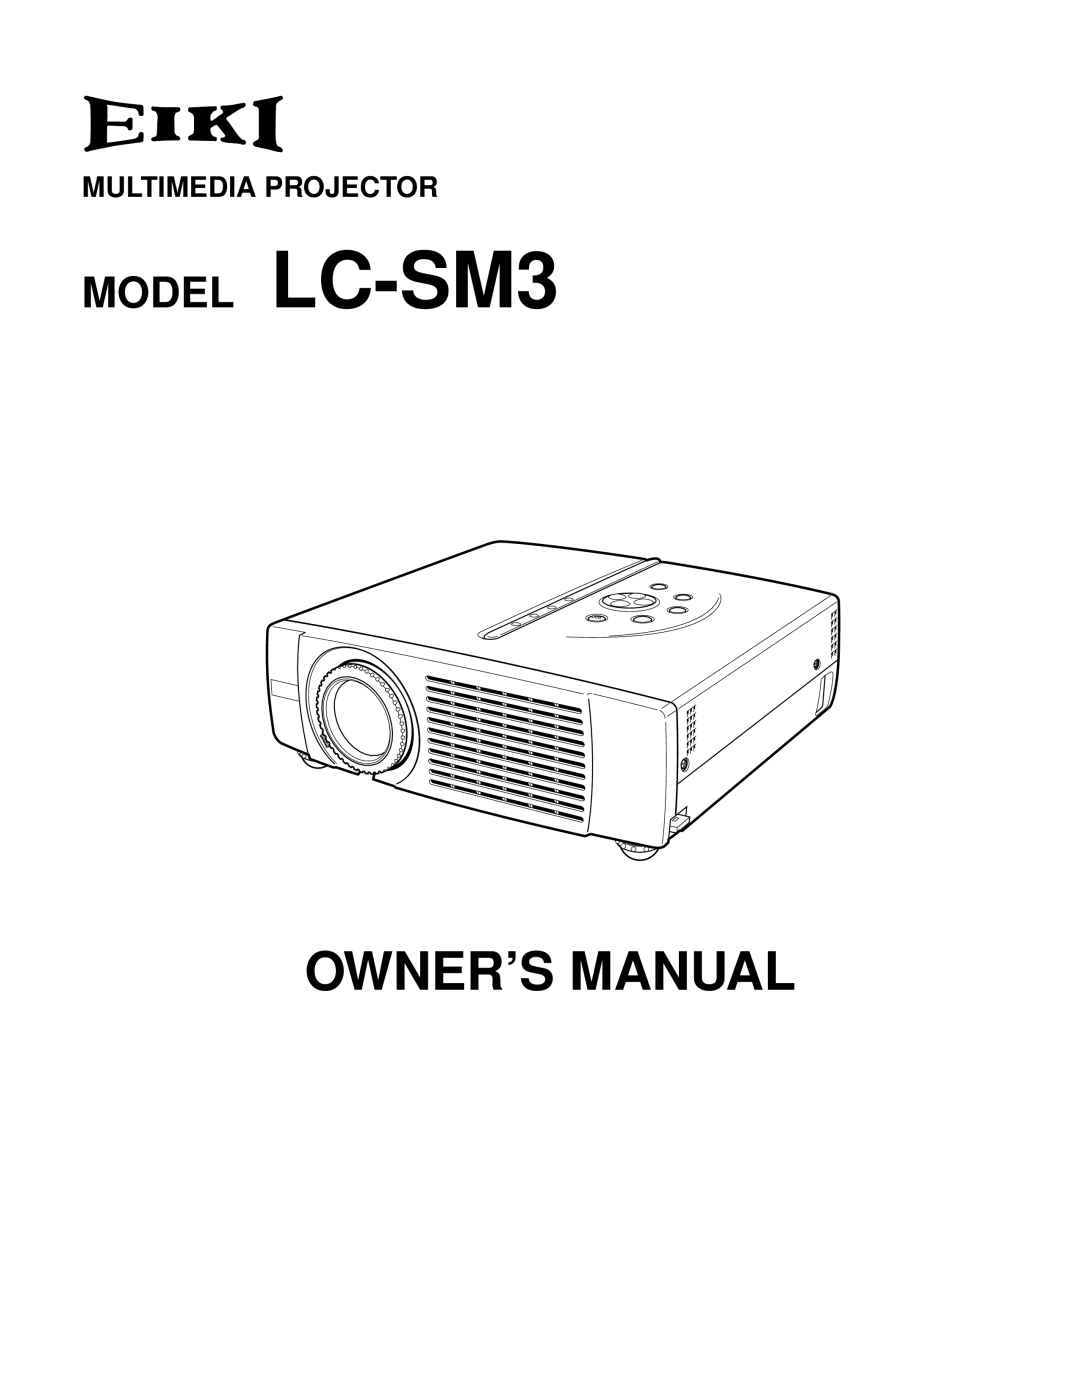 Eiki owner manual Model LC-SM3 